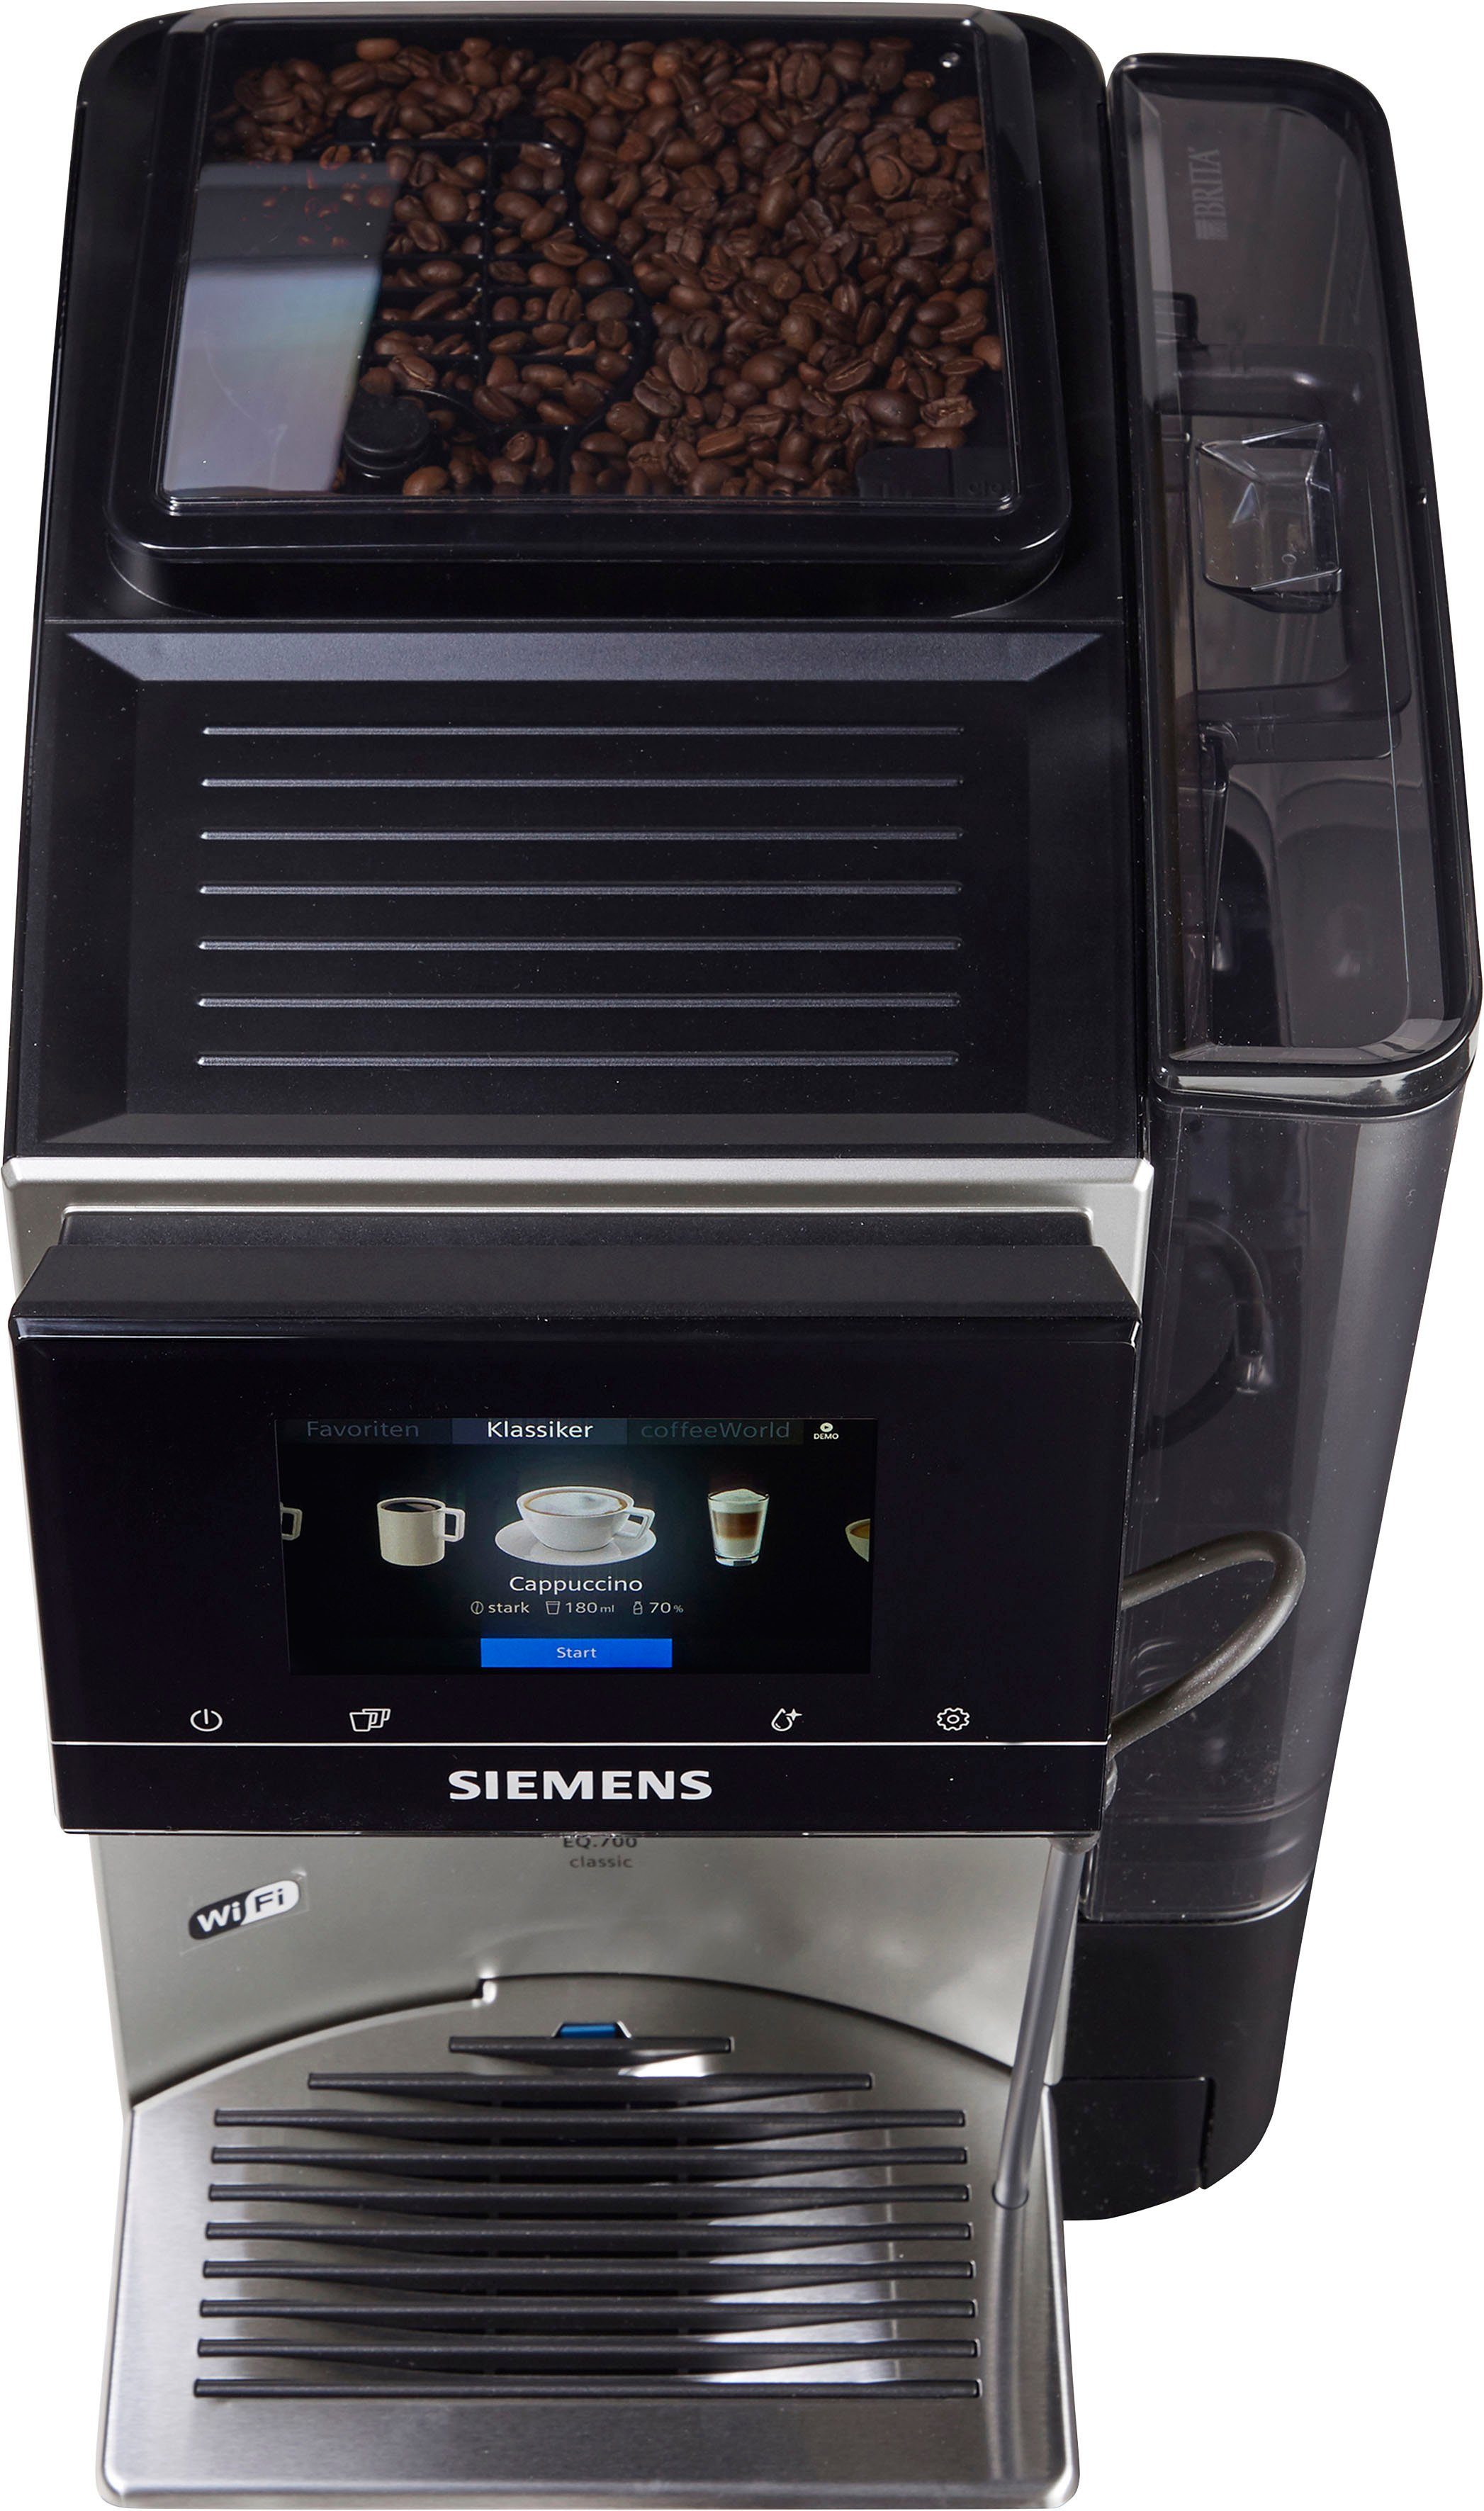 SIEMENS bis Profile Inox TP705D47, Milchsystem-Reinigung EQ.700 Full-Touch-Display, Kaffeevollautomat 10 speicherbar, silber metallic